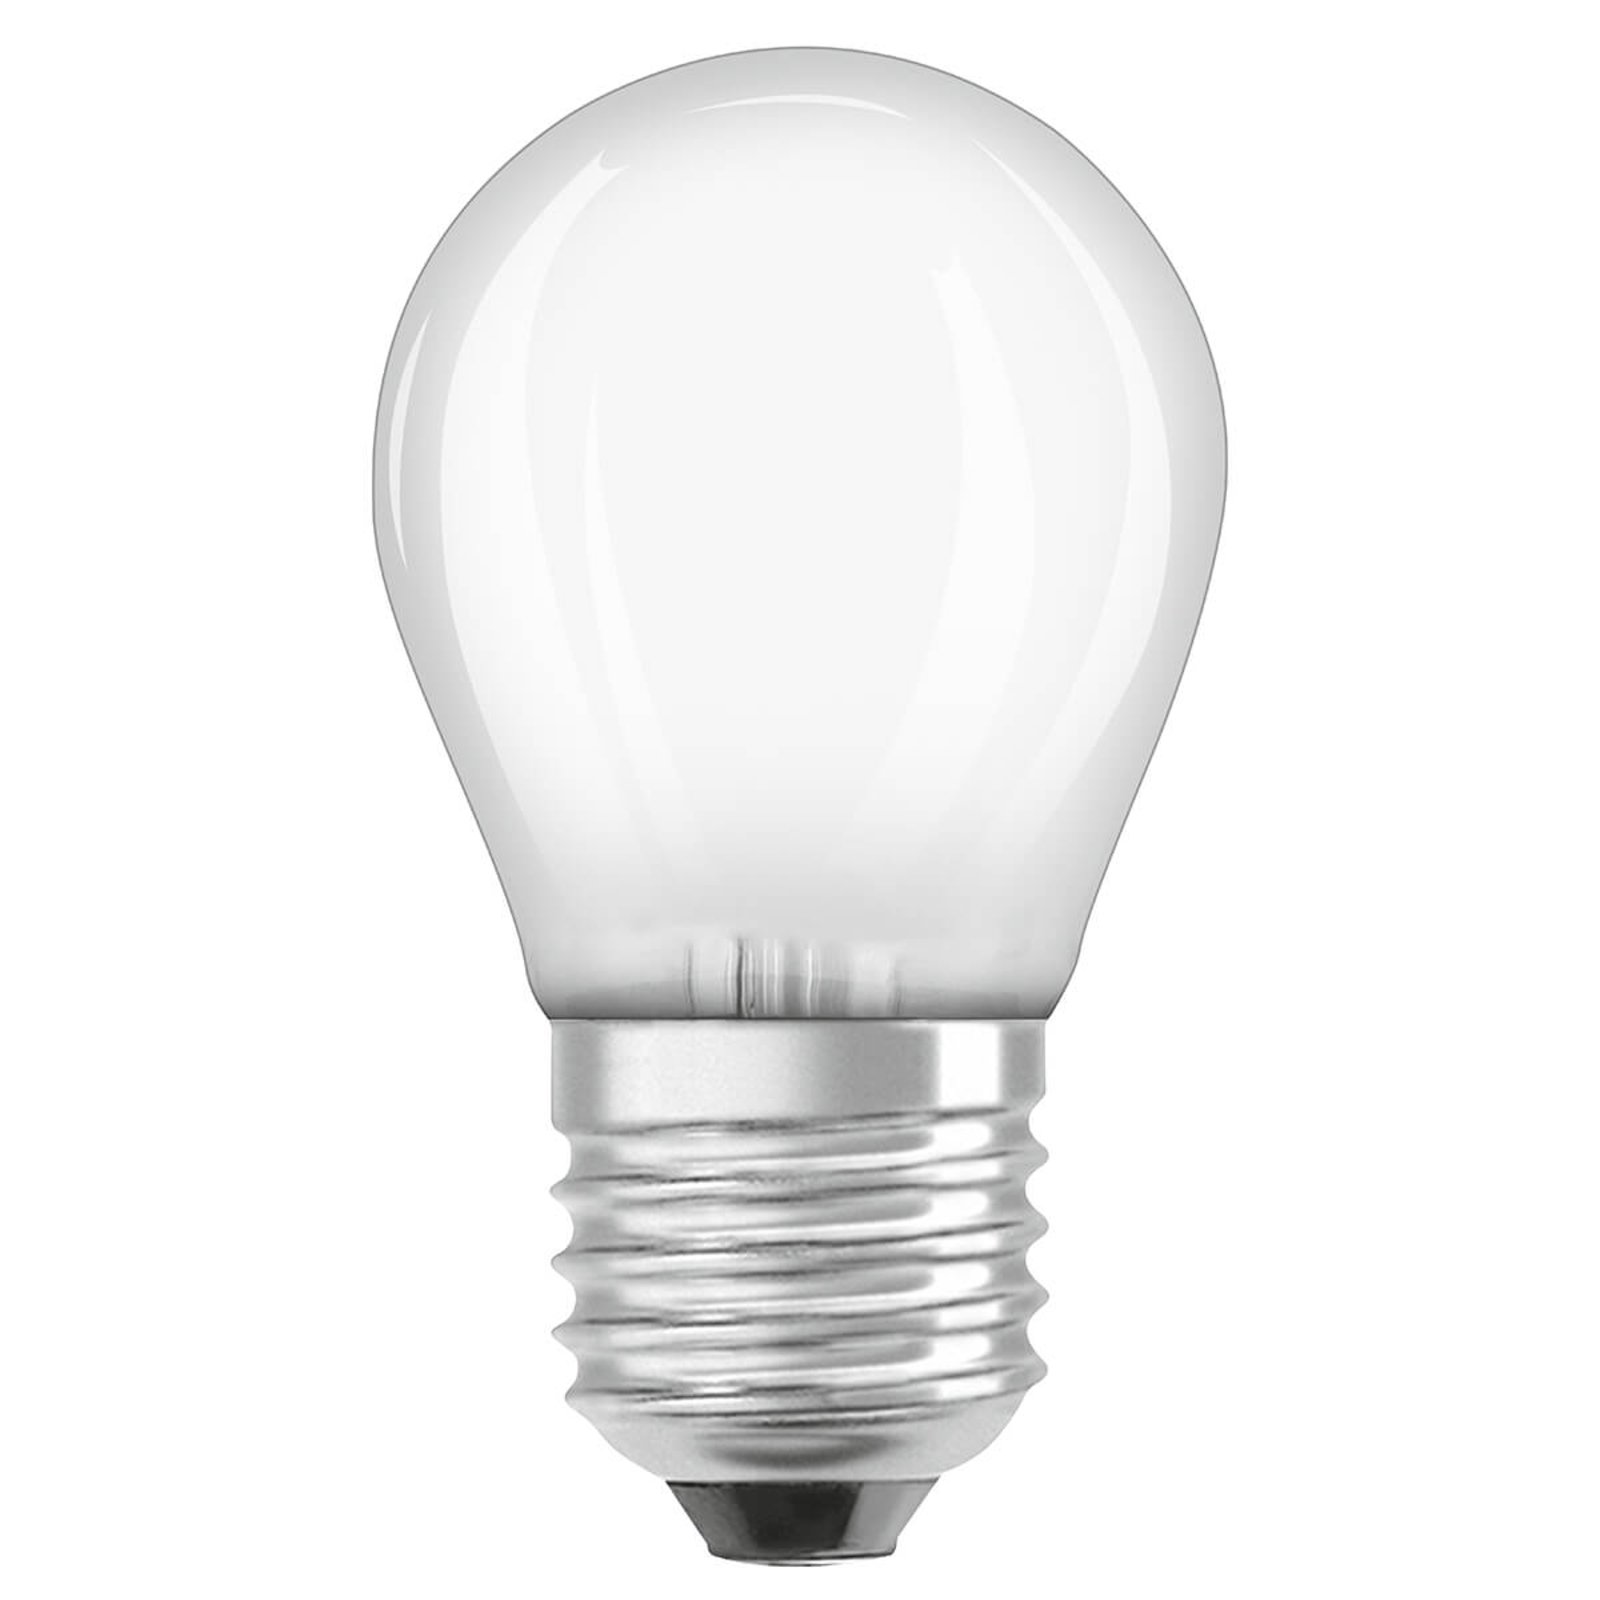 OSRAM LED druppellamp E27 2,8W 827 dimbaar